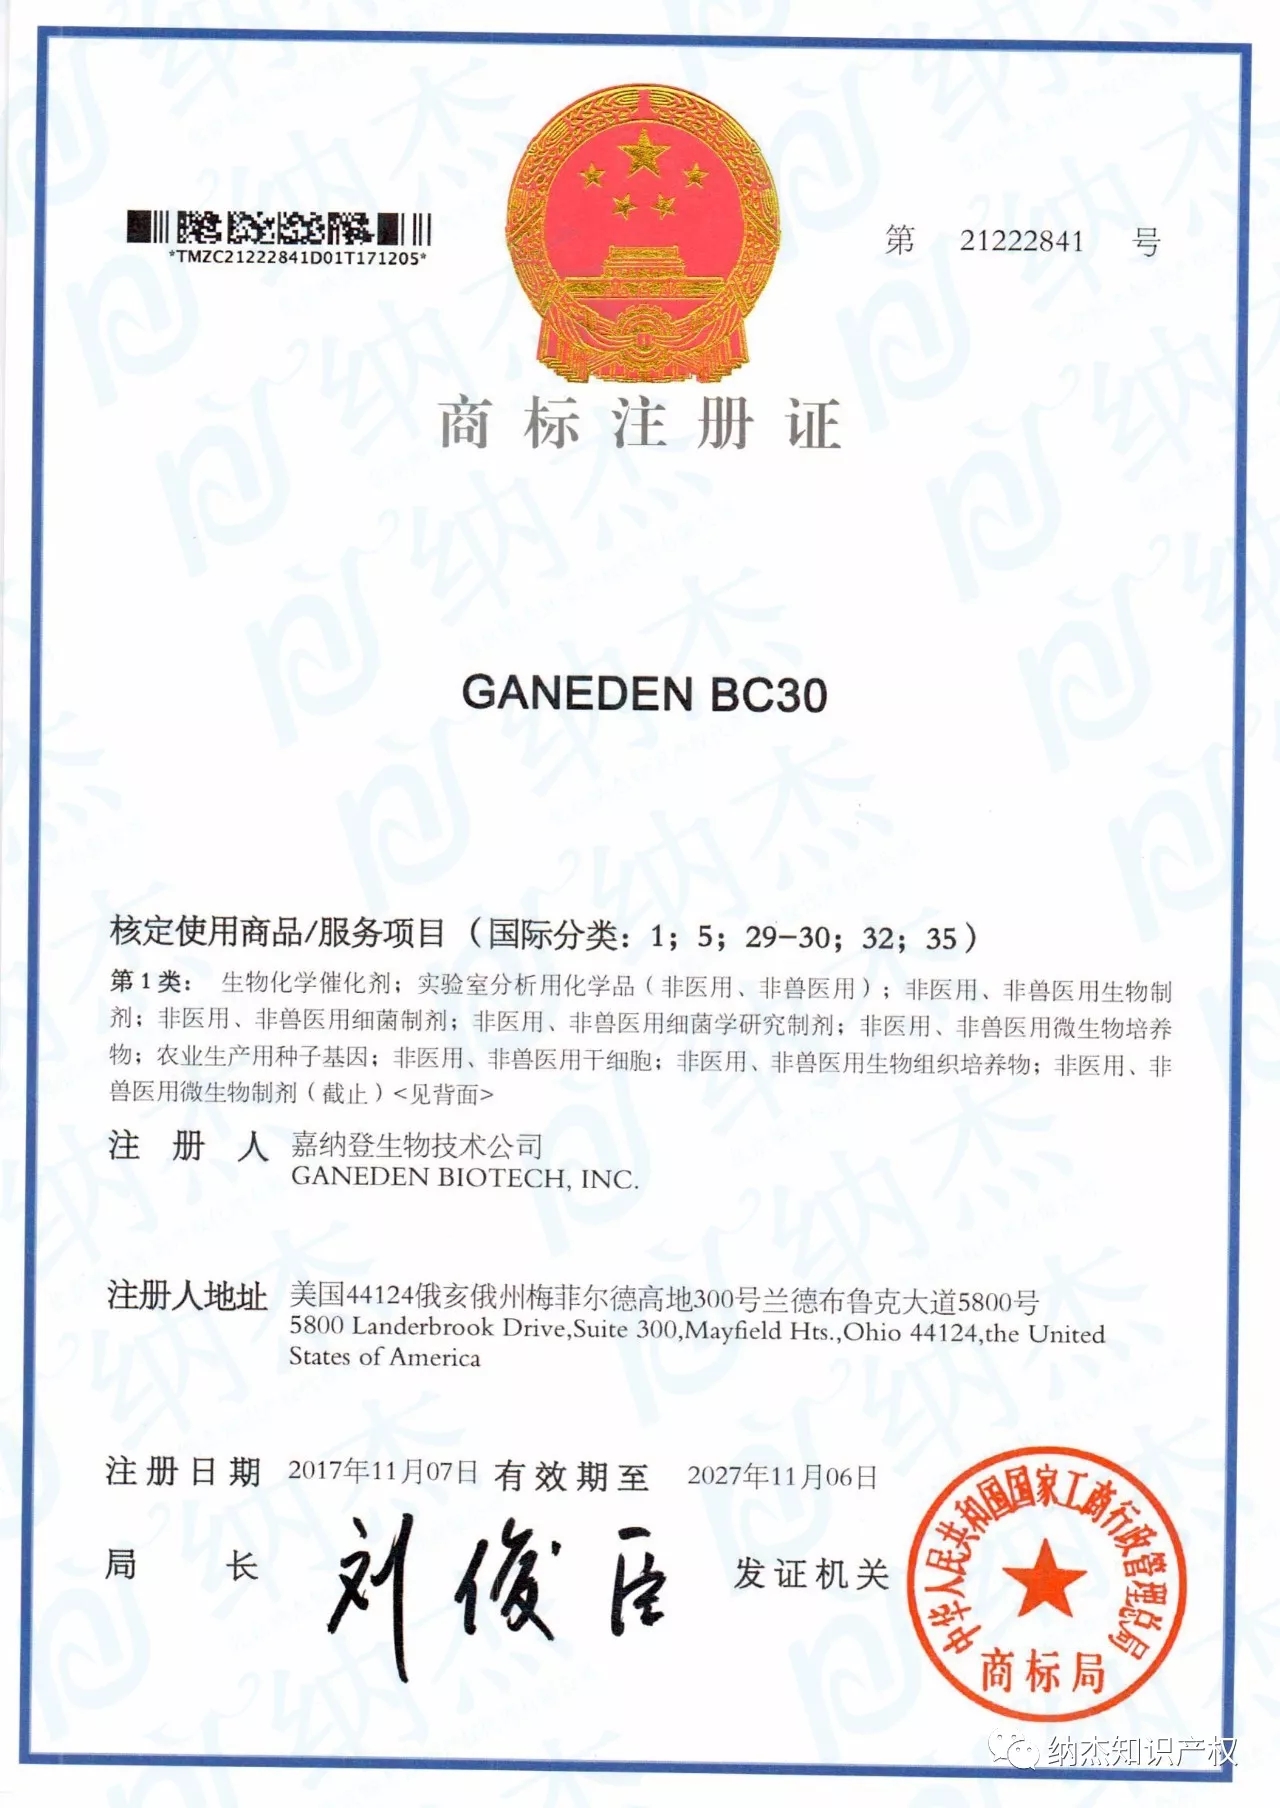 纳杰知识产权代理“GANEDEN BC30”商标国际注册成功